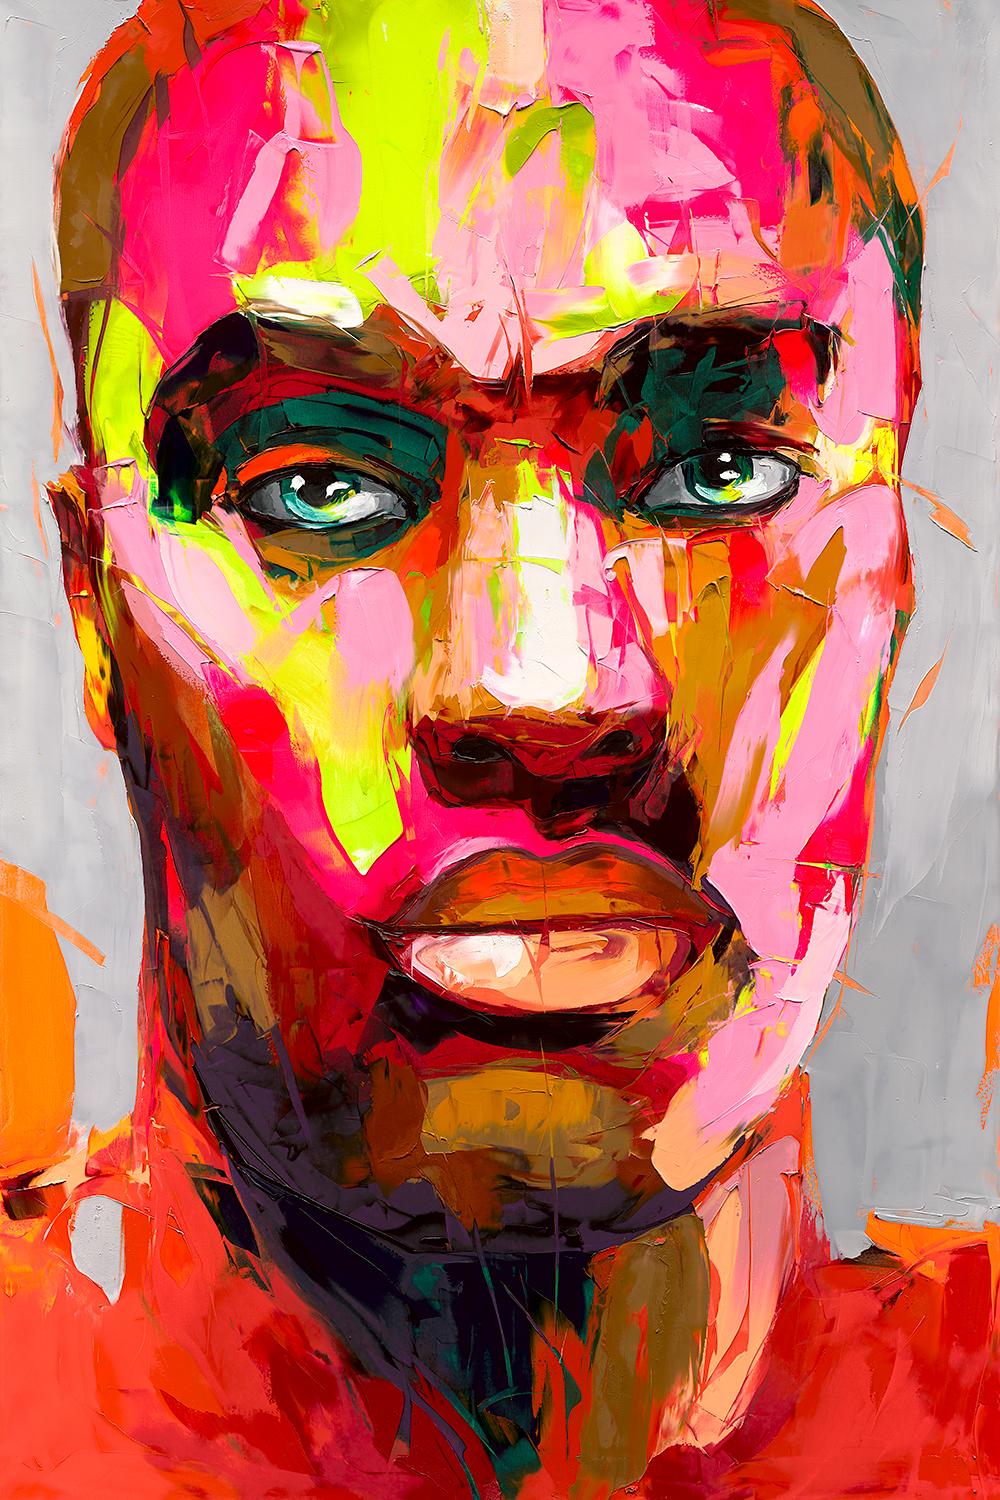 Wesley - 21st Cent, Contemporary, Figurative, Pigment Print, Portrait, Pop